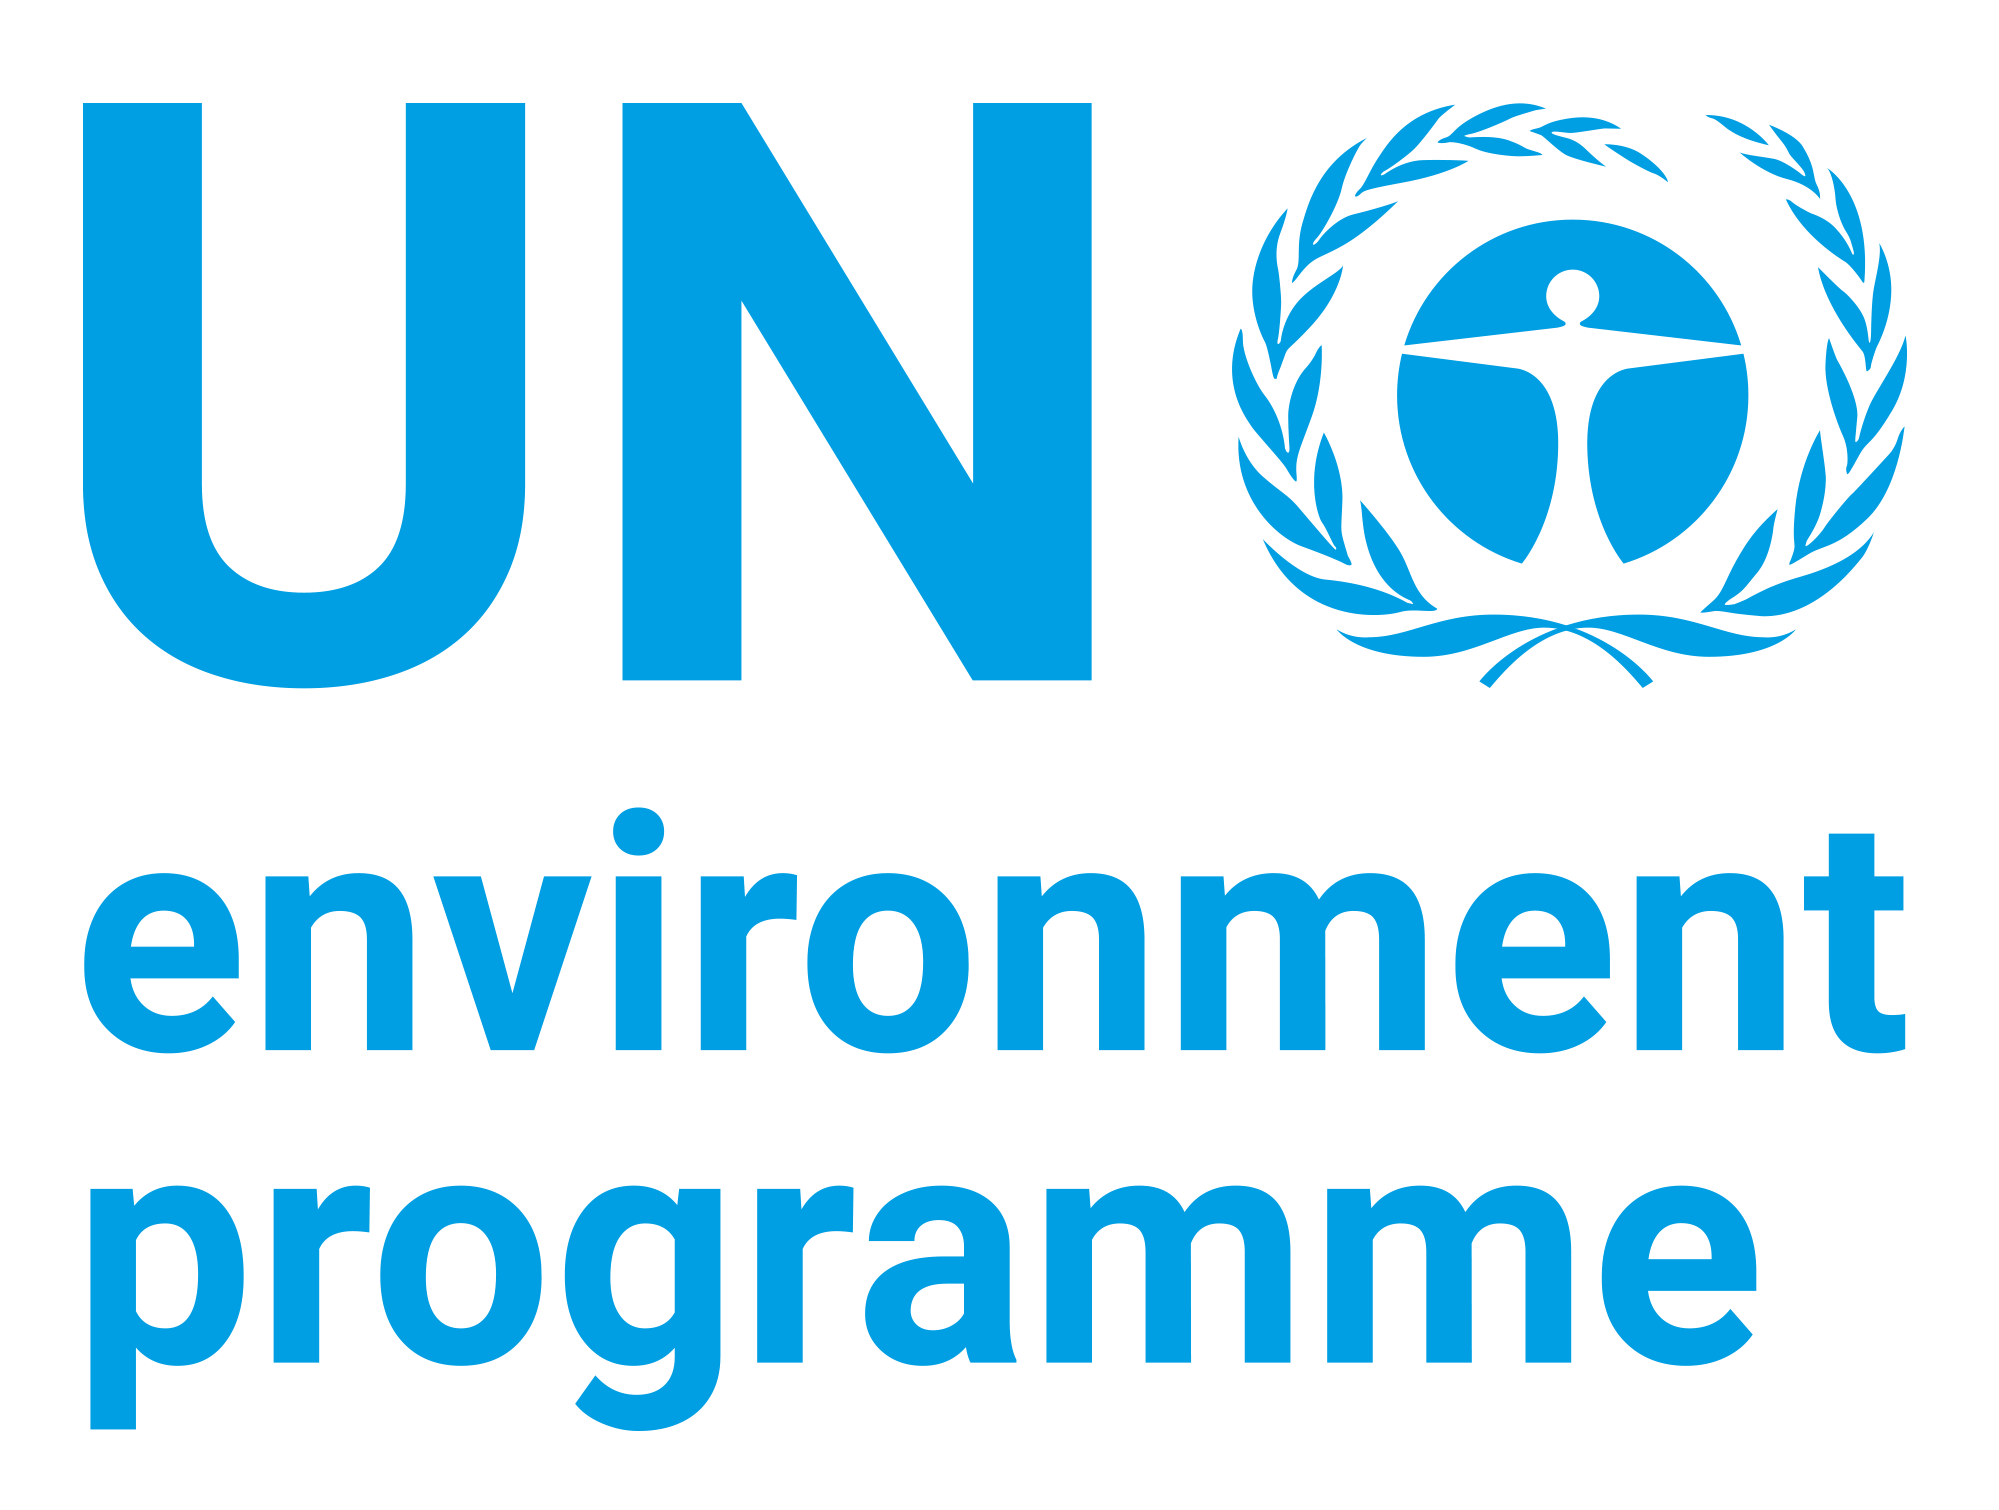 un_environment_logo.png